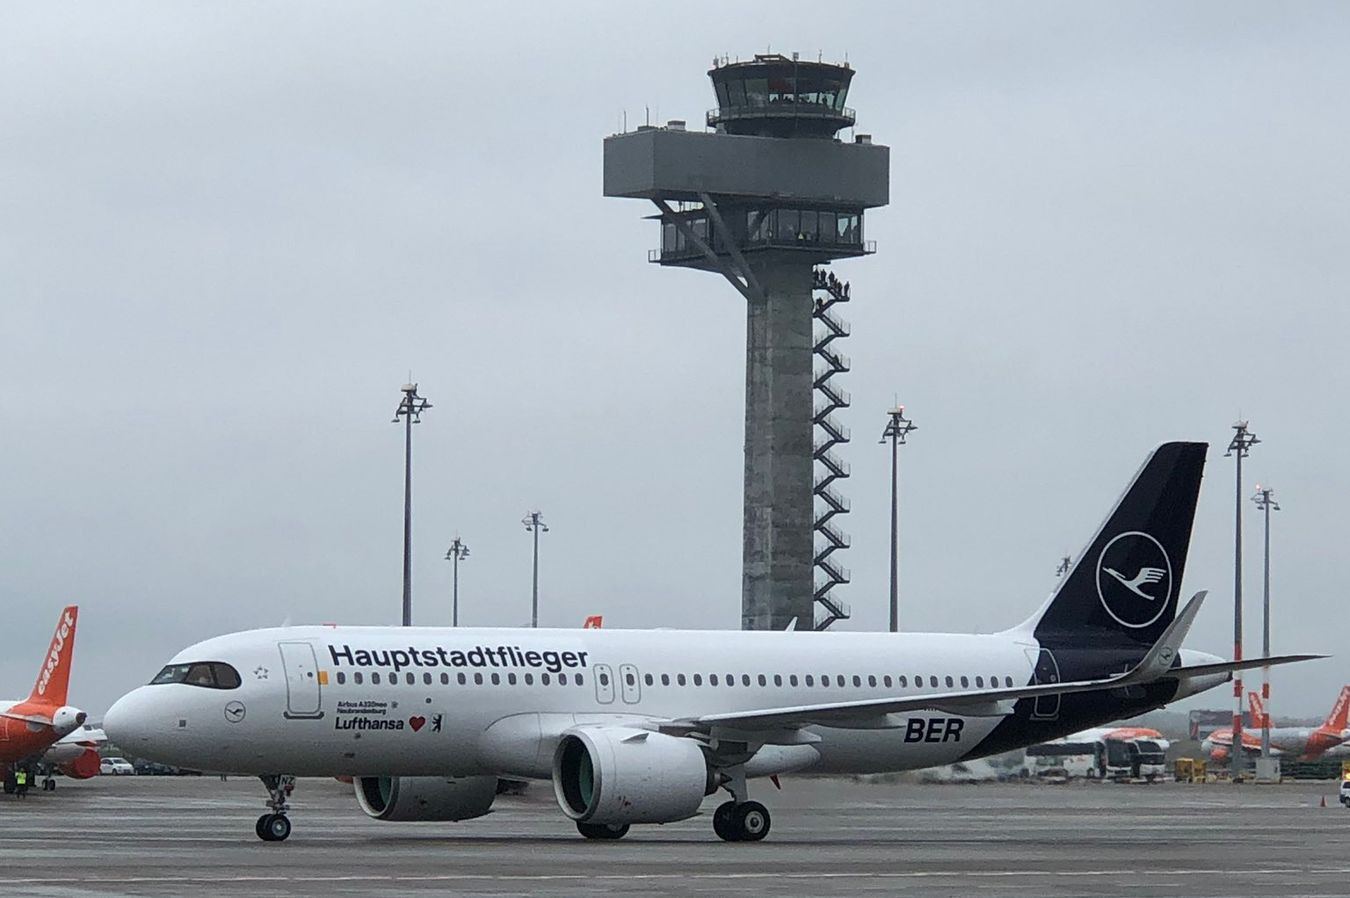 Bläst Lufthansa wirklich zur Rückkehr auf die Kurzstrecke?